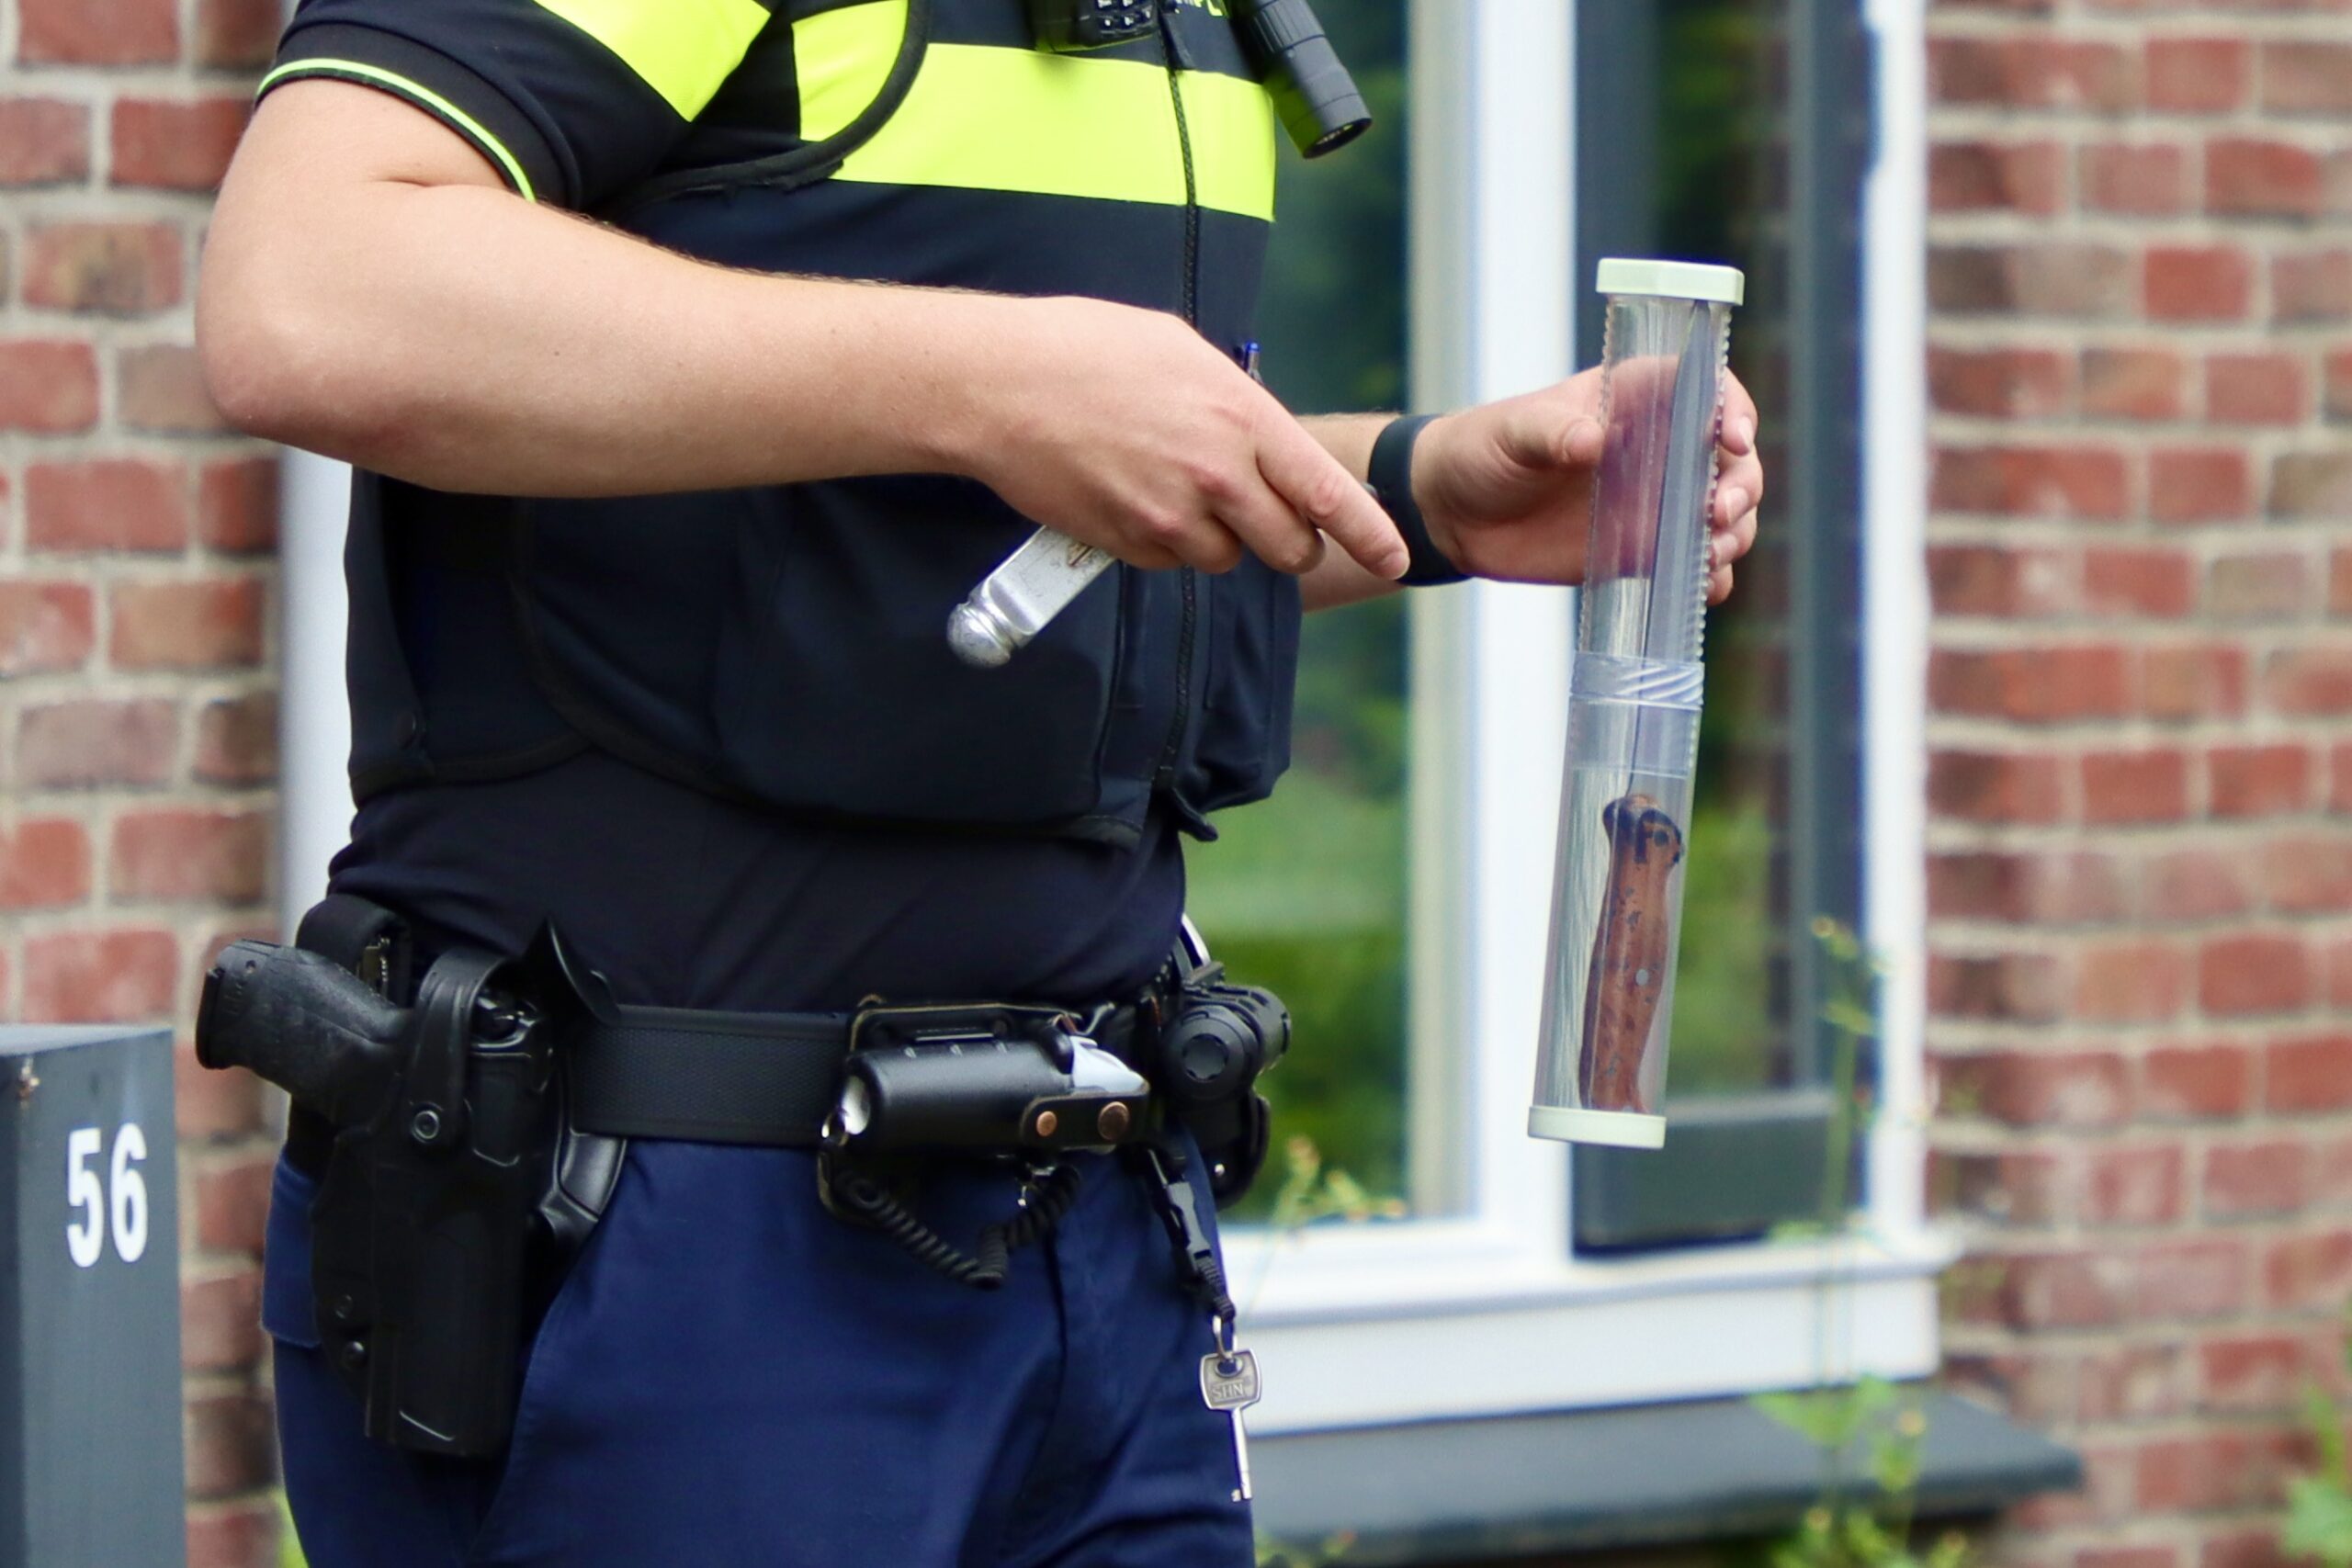 UPDATE: Politie rukt uit voor melding steekincident in Oldenzaal; een persoon aangehouden